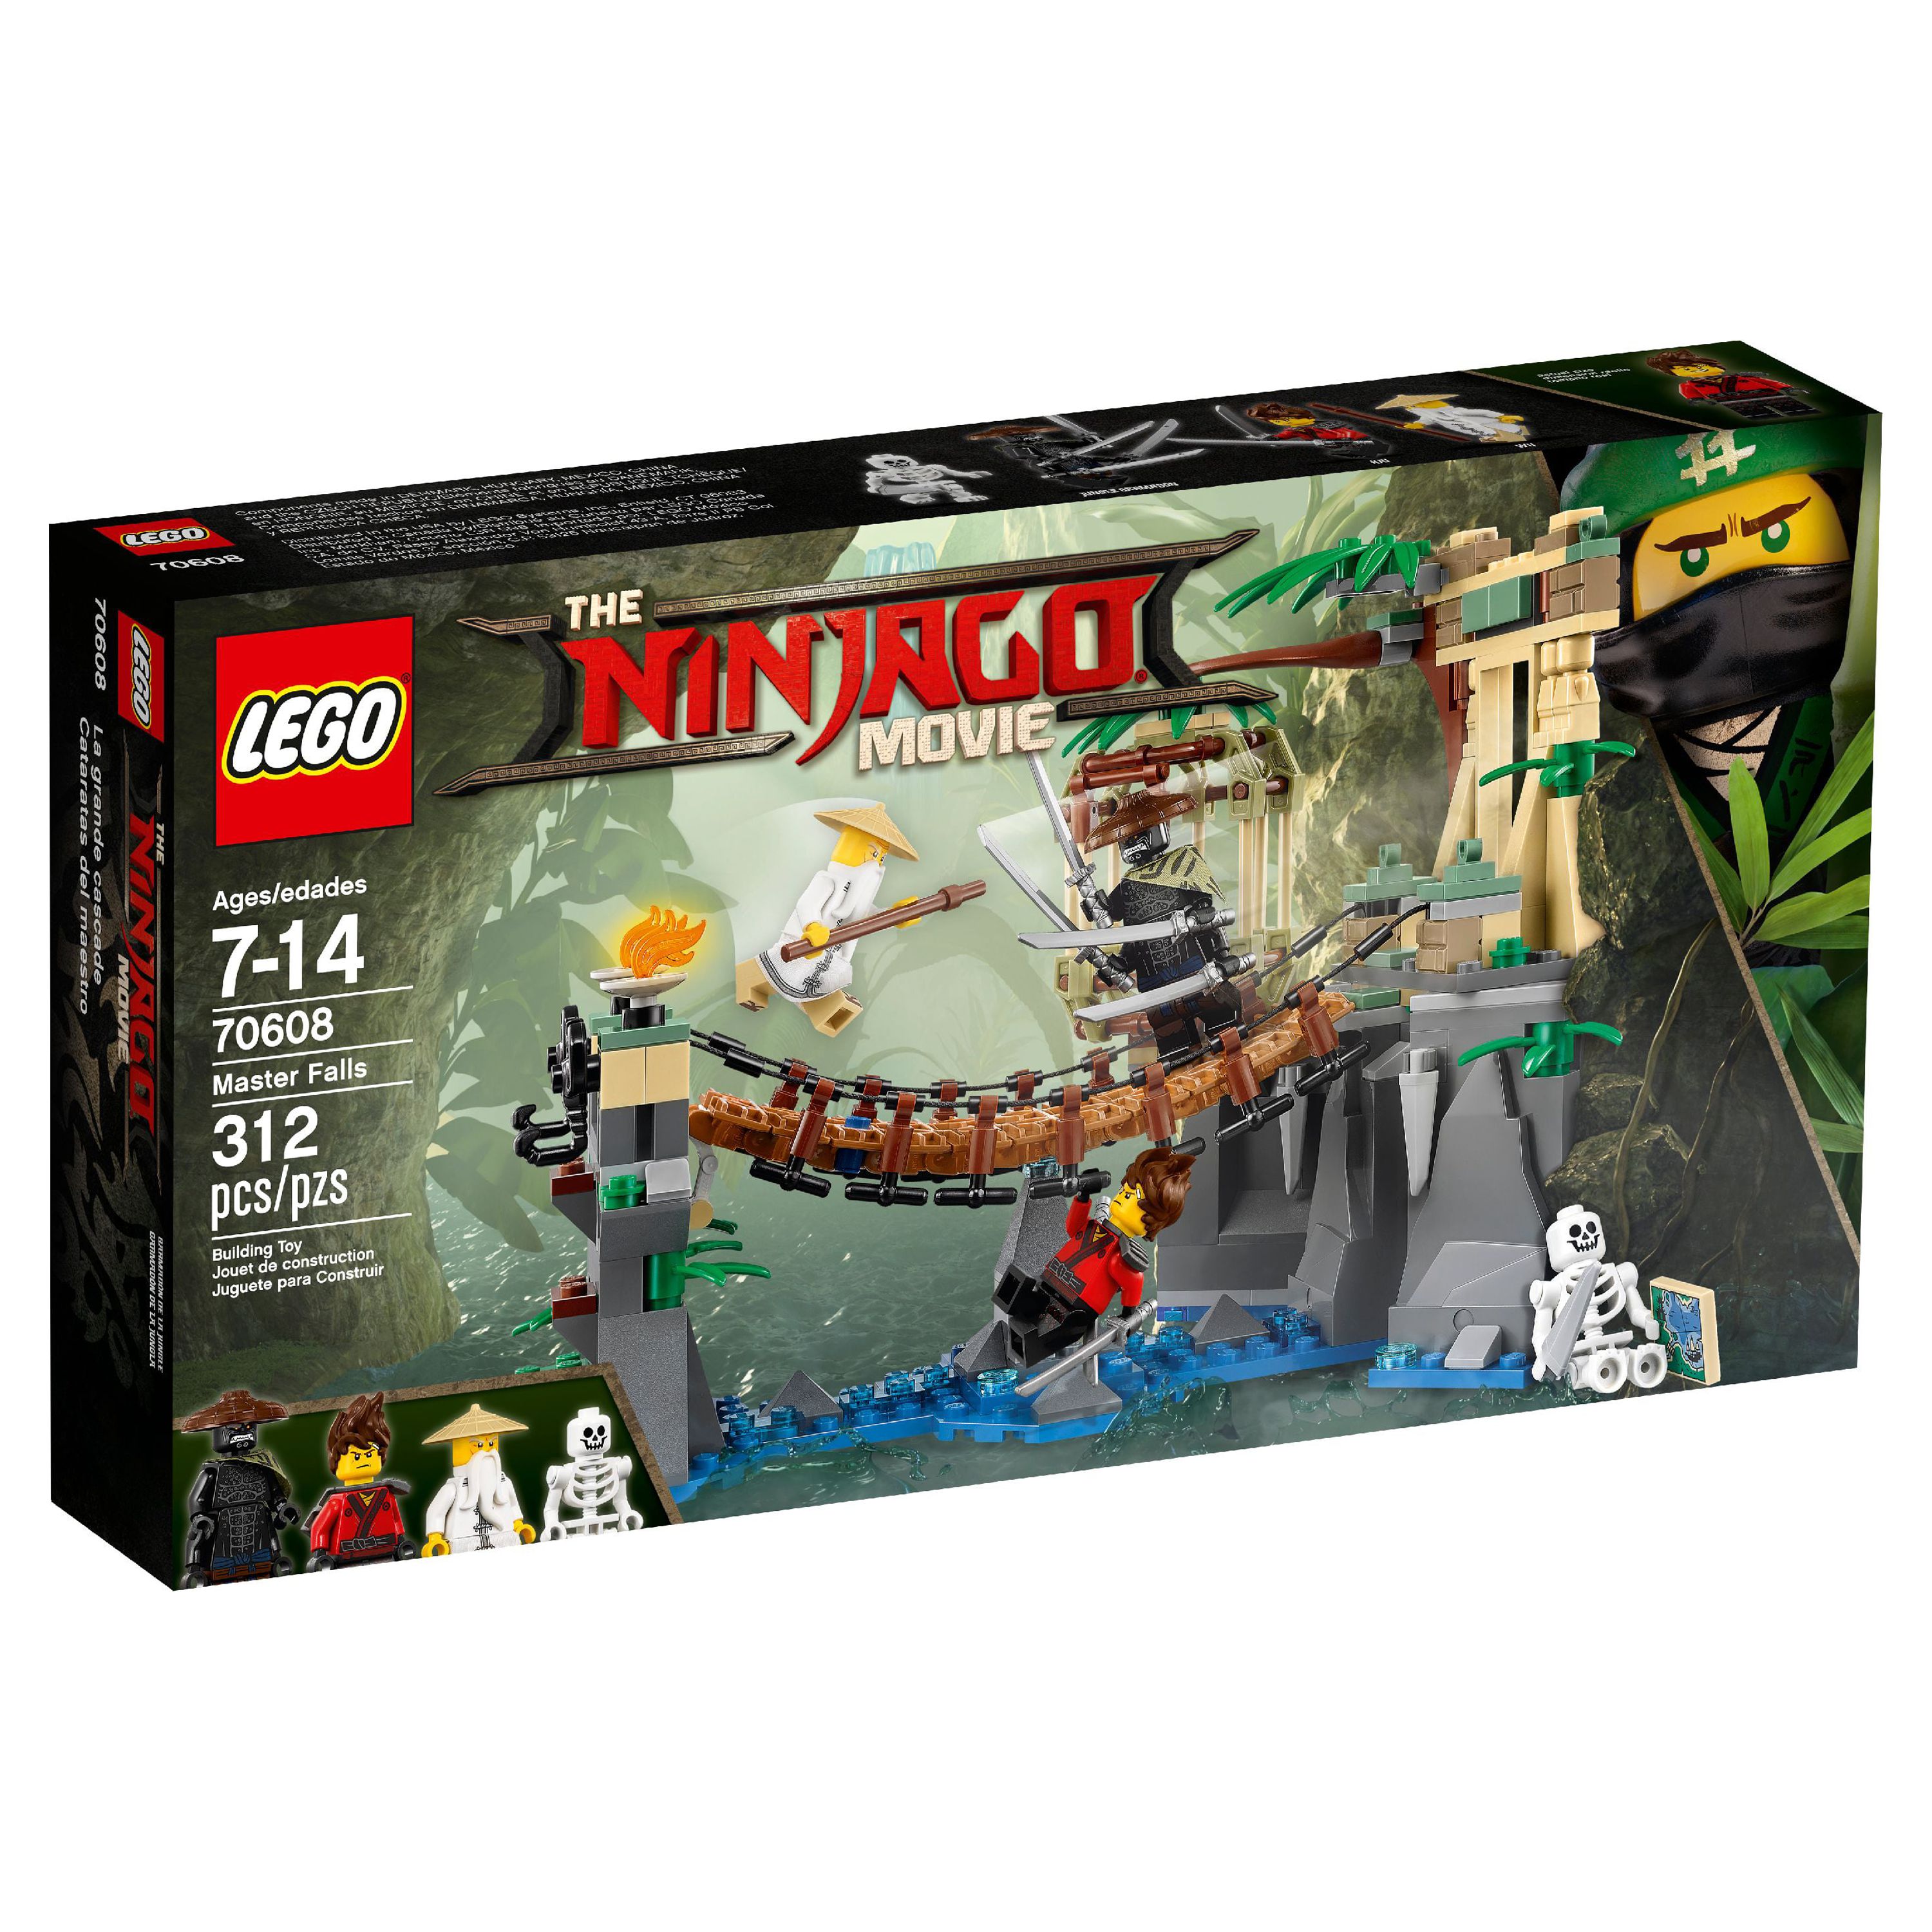 LEGO Ninjago Movie Master Falls 70608 (312 Pieces) - image 2 of 6